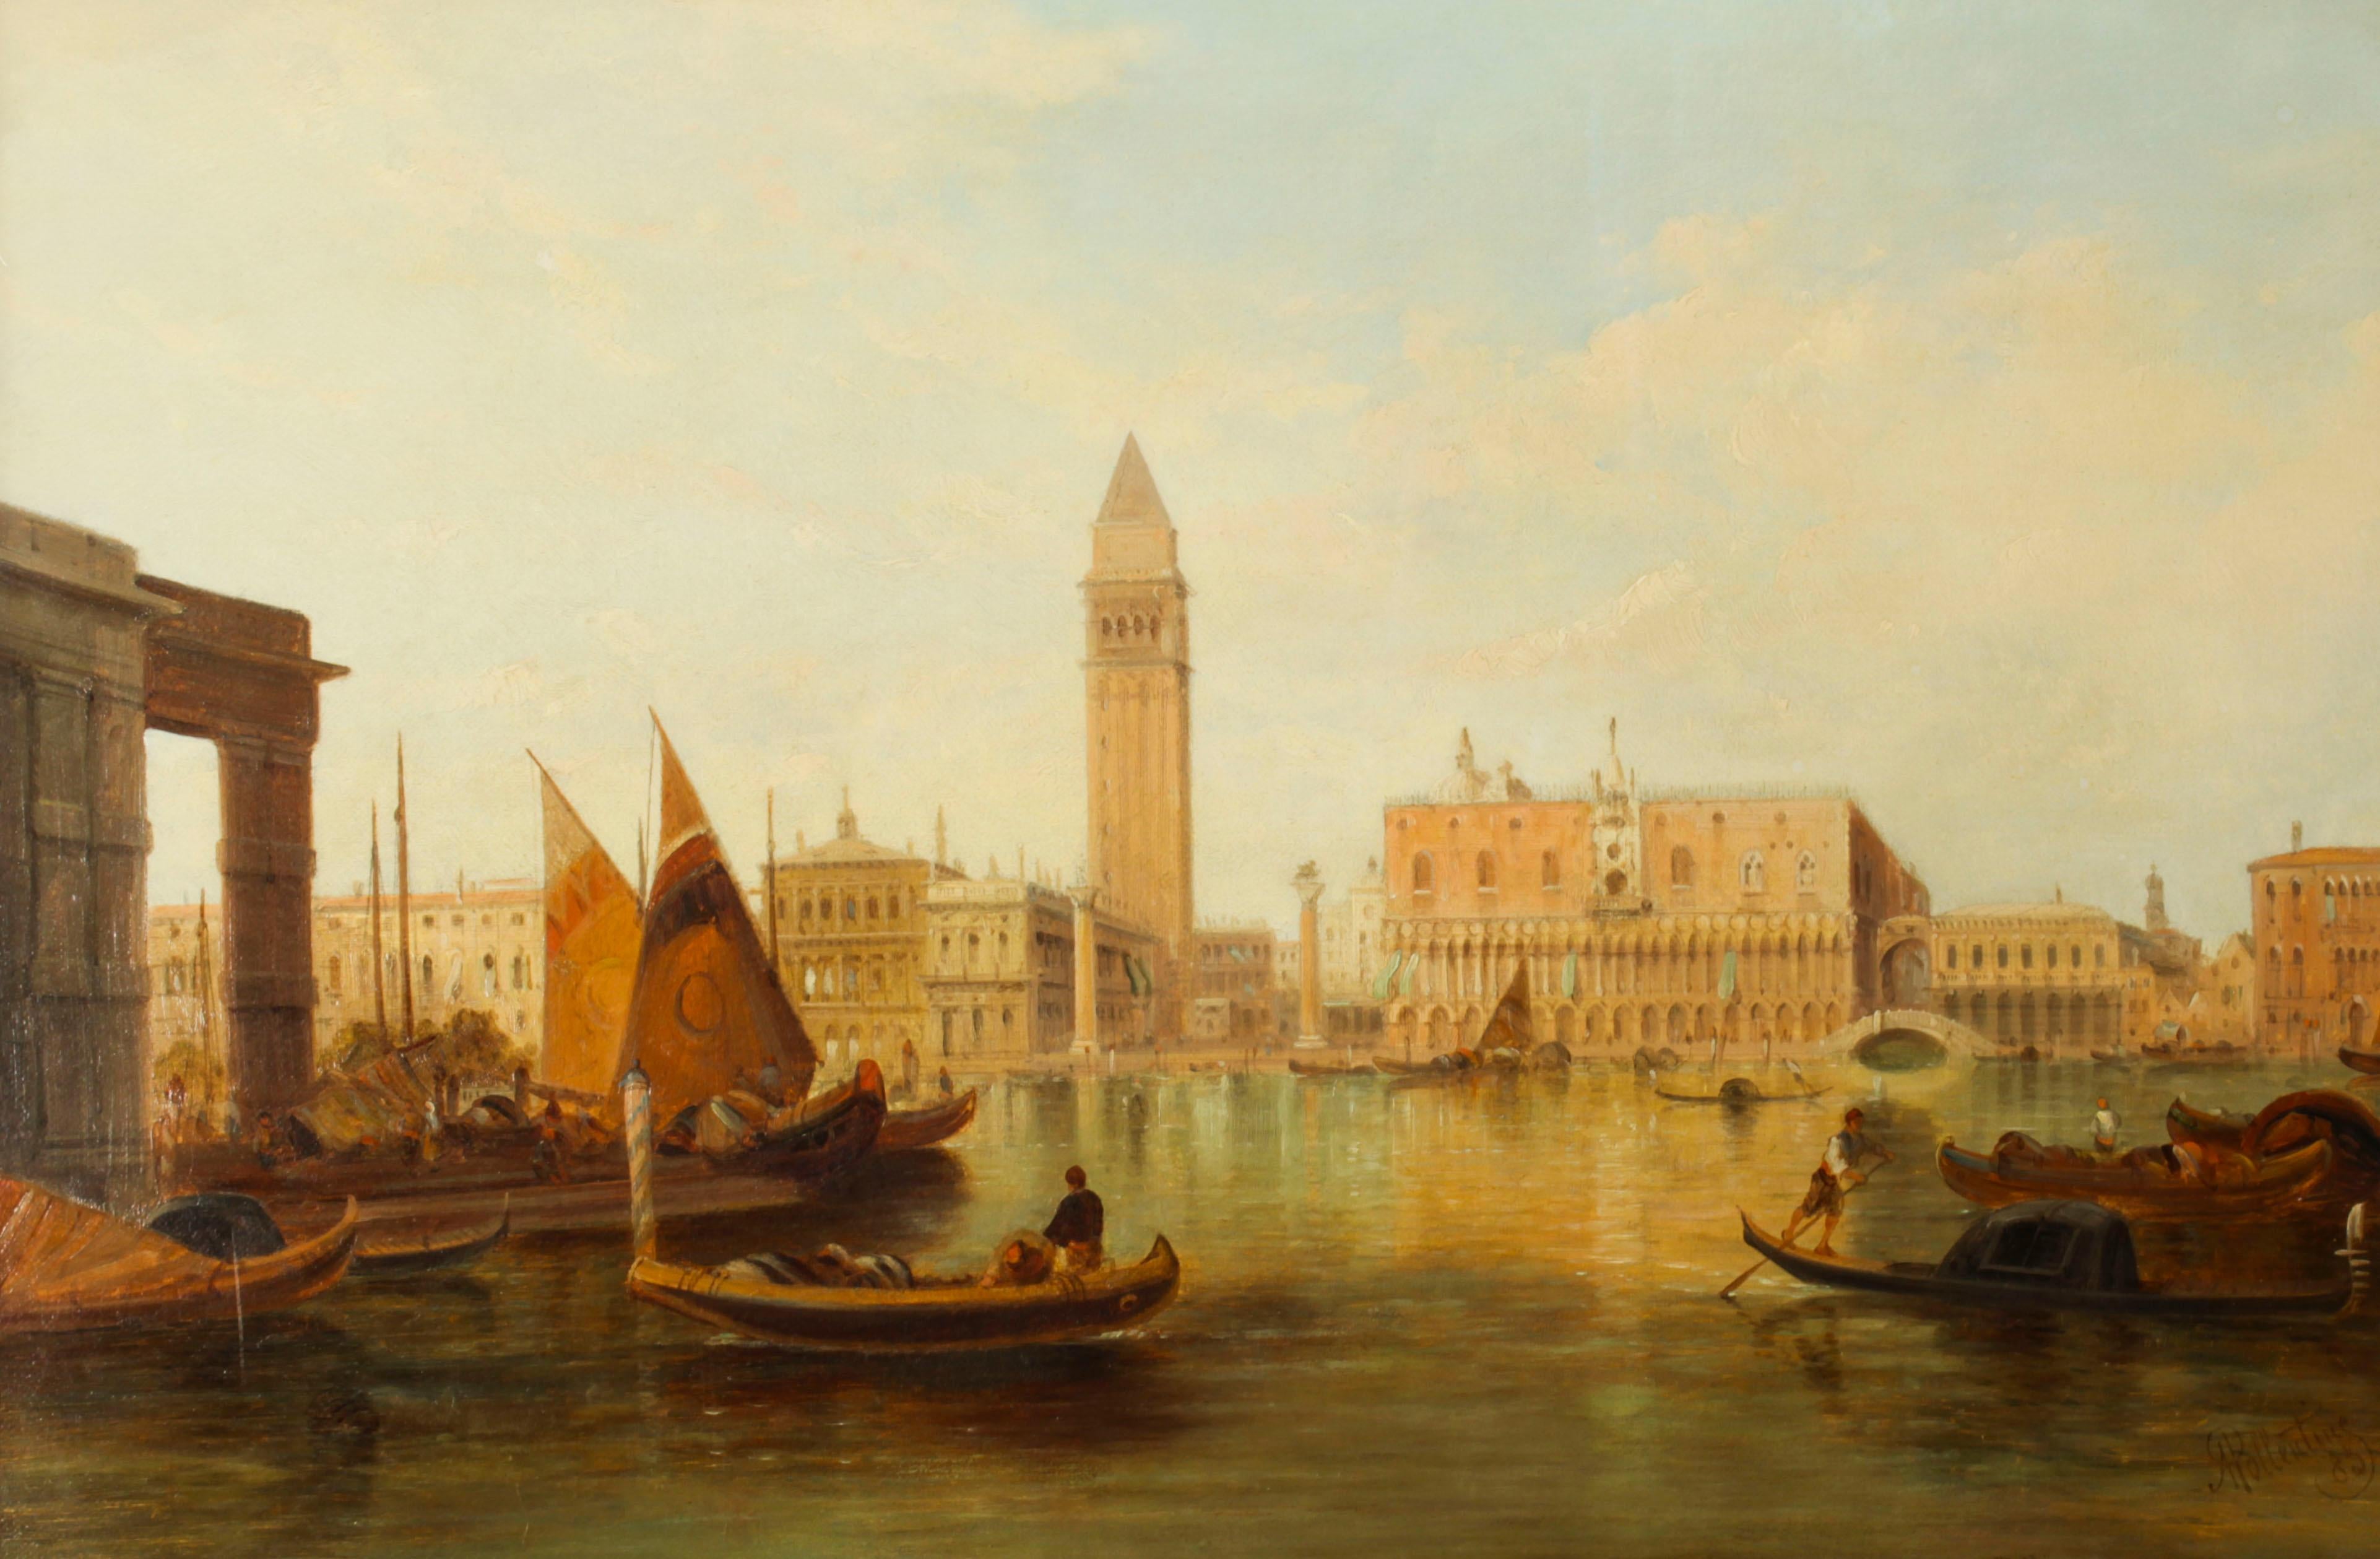 Il s'agit d'une magnifique peinture à l'huile sur toile représentant la vue du palais ducal et l'entrée du canal de la place Saint-Marc à Venise, réalisée par le célèbre artiste britannique Alfred Pollentine (1836-1890) et signée en bas à droite 